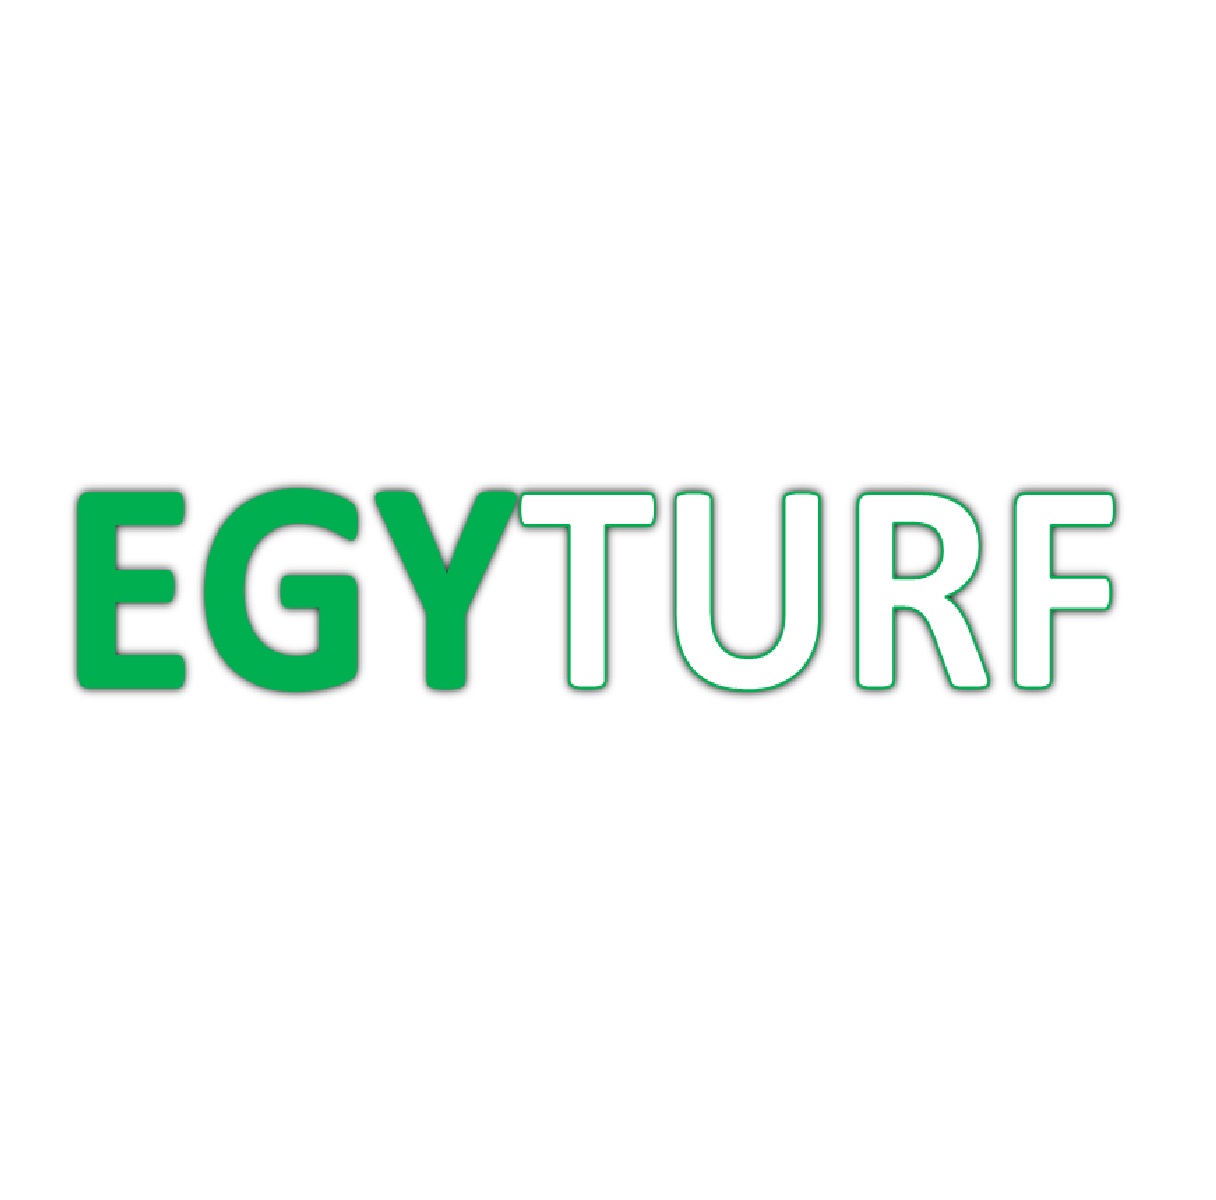 Egyptian Artificial Grass Manufacturer and Supplier - EGYTURF